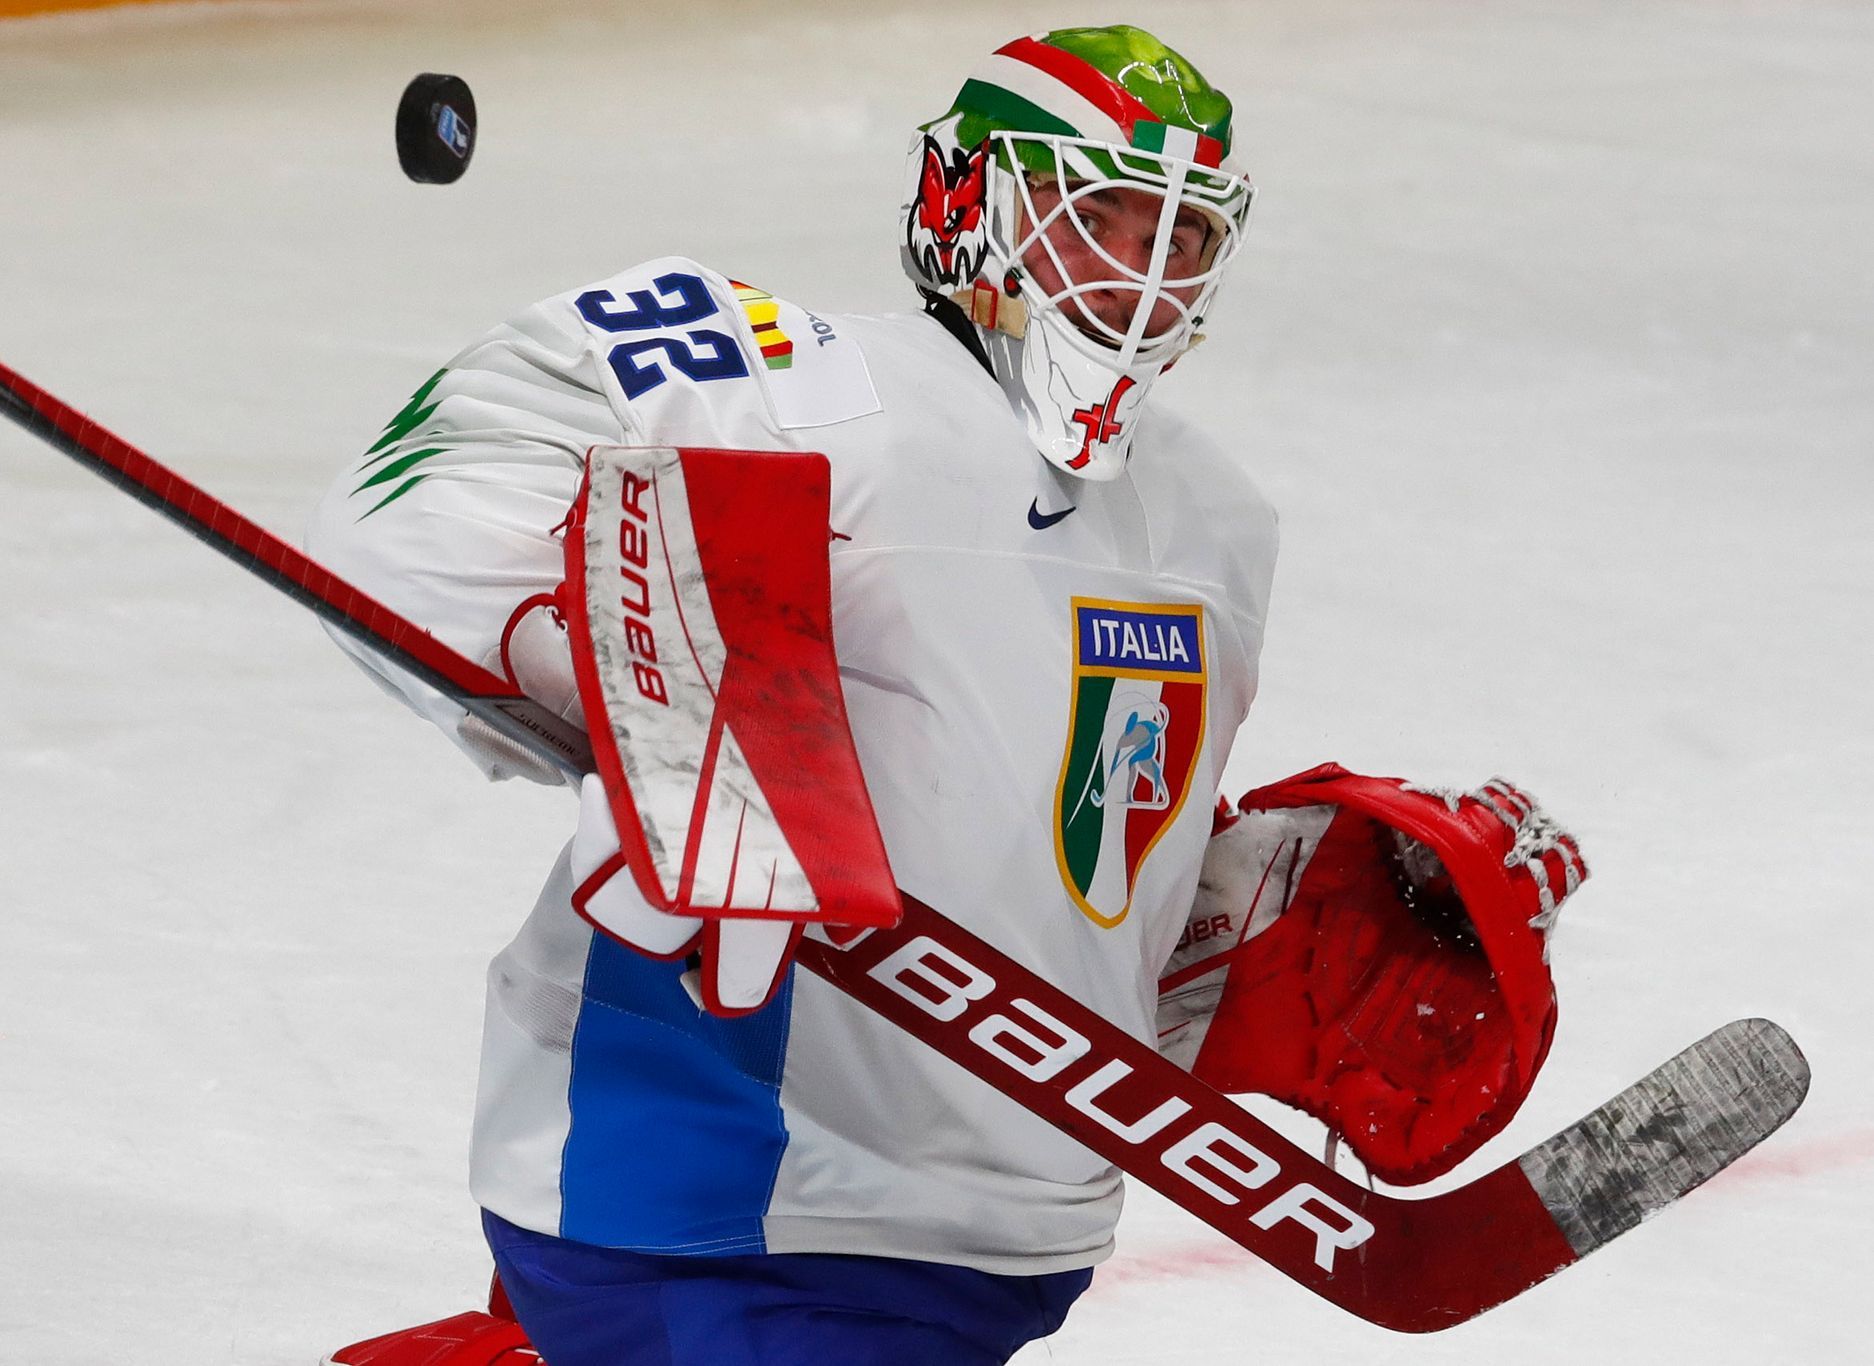 Après un départ somnolent, le joueur de hockey canadien a battu l’Italie 6:1 sans problème